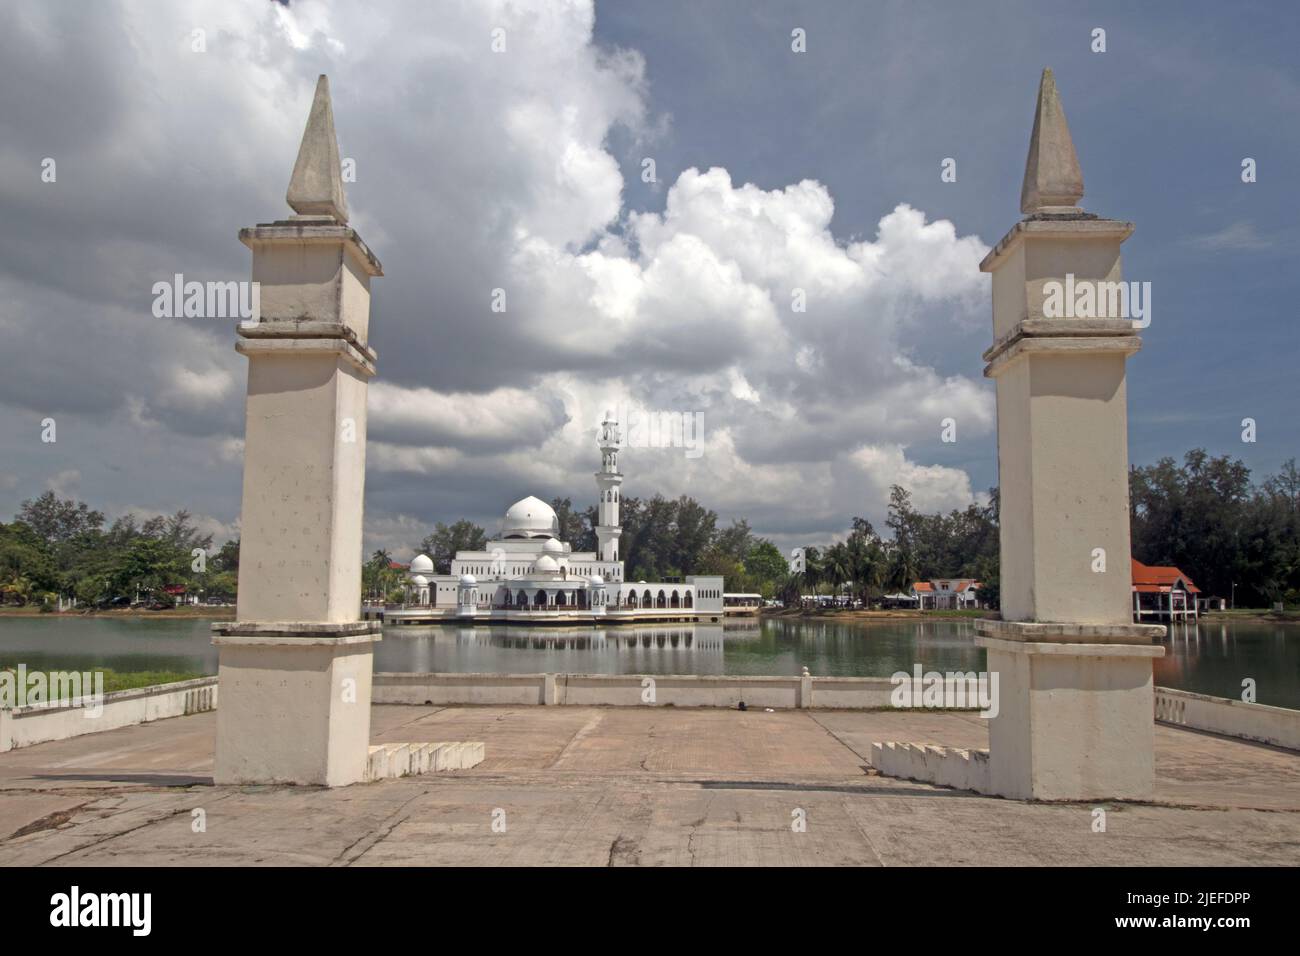 Piliers du pavillon flottant avec la Mosquée flottante de Kuala Ibai sous de lourds nuages à Kuala Ibai à Kuala Terengganu, Malaisie. Banque D'Images